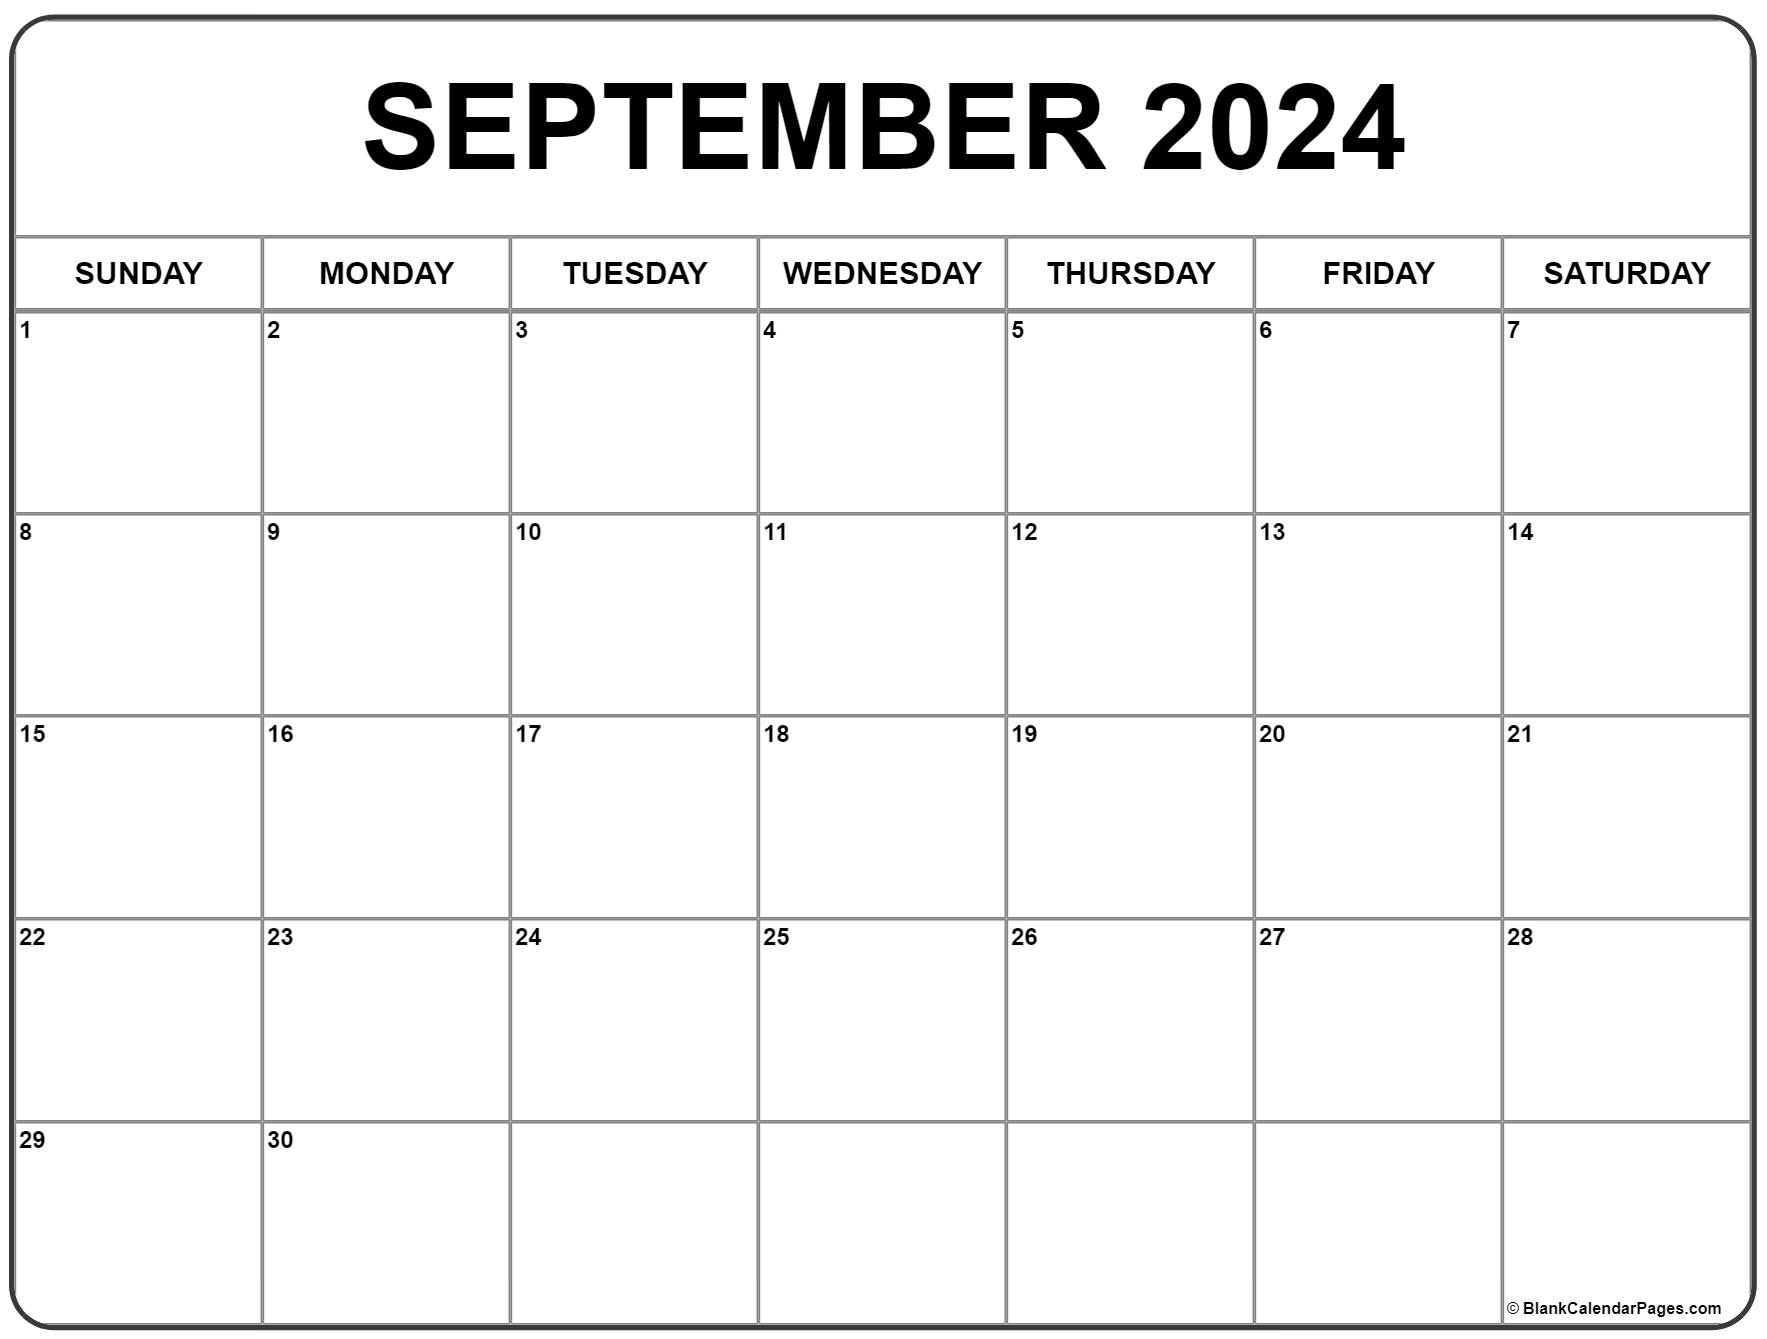 September Printable Calendar 2022 September 2022 Calendar | Free Printable Calendar Templates